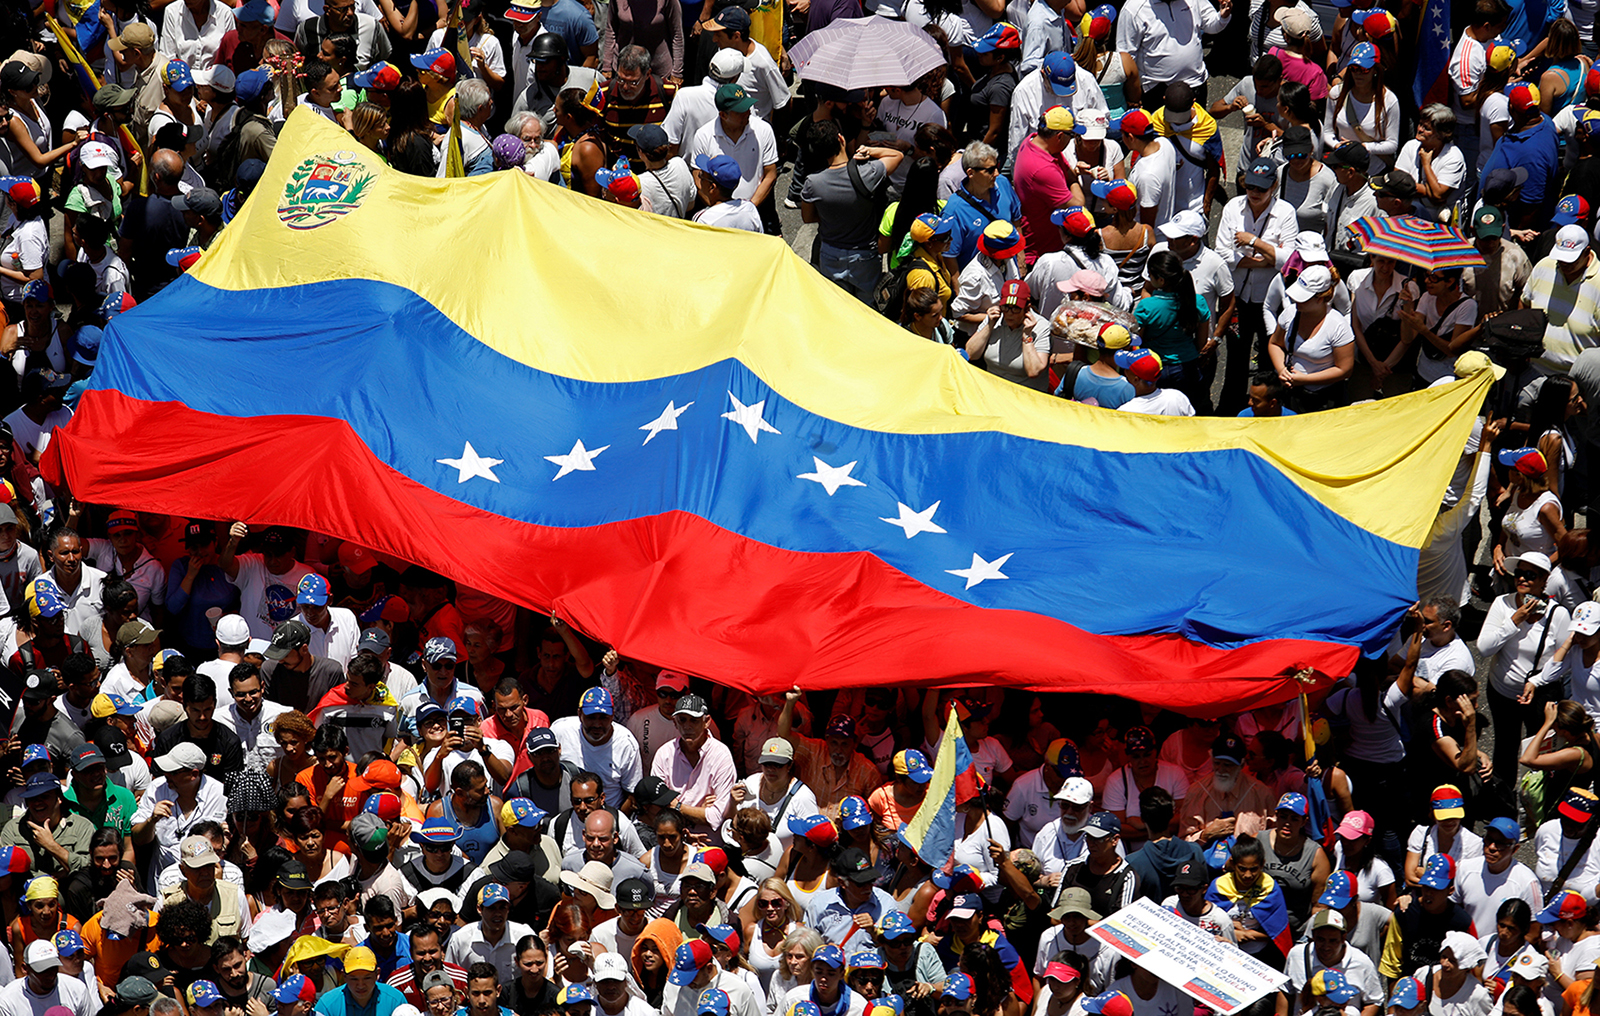 Venezuela judiciary aiding repression, UN finds